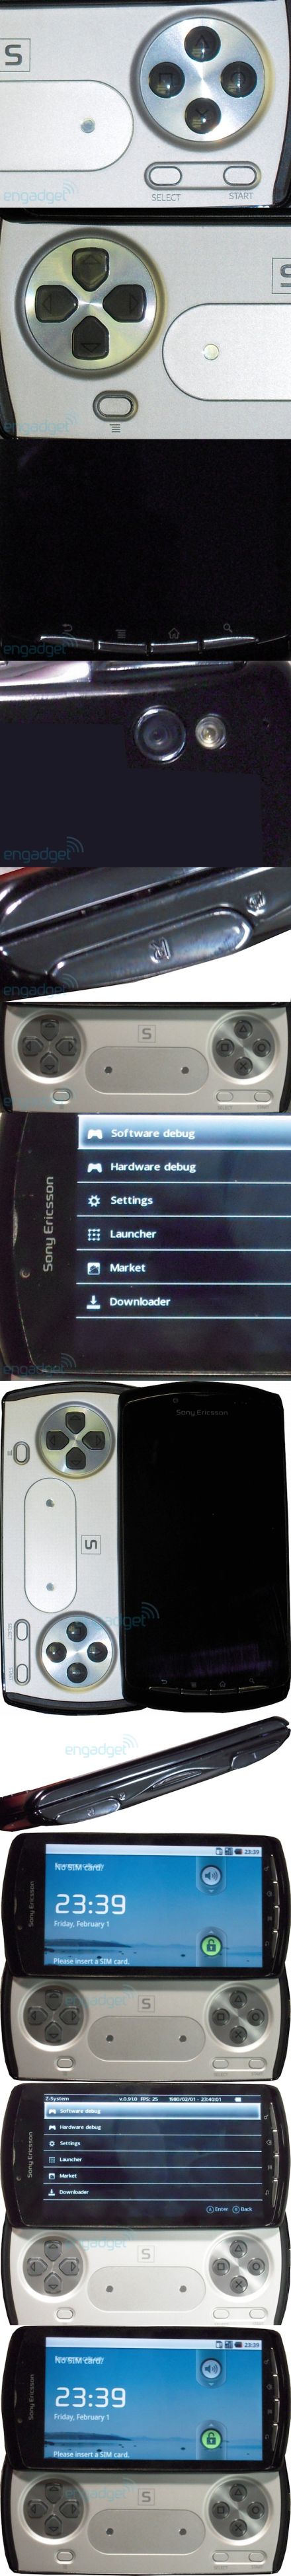 Itt a Sony Ericsson PSP mobil?